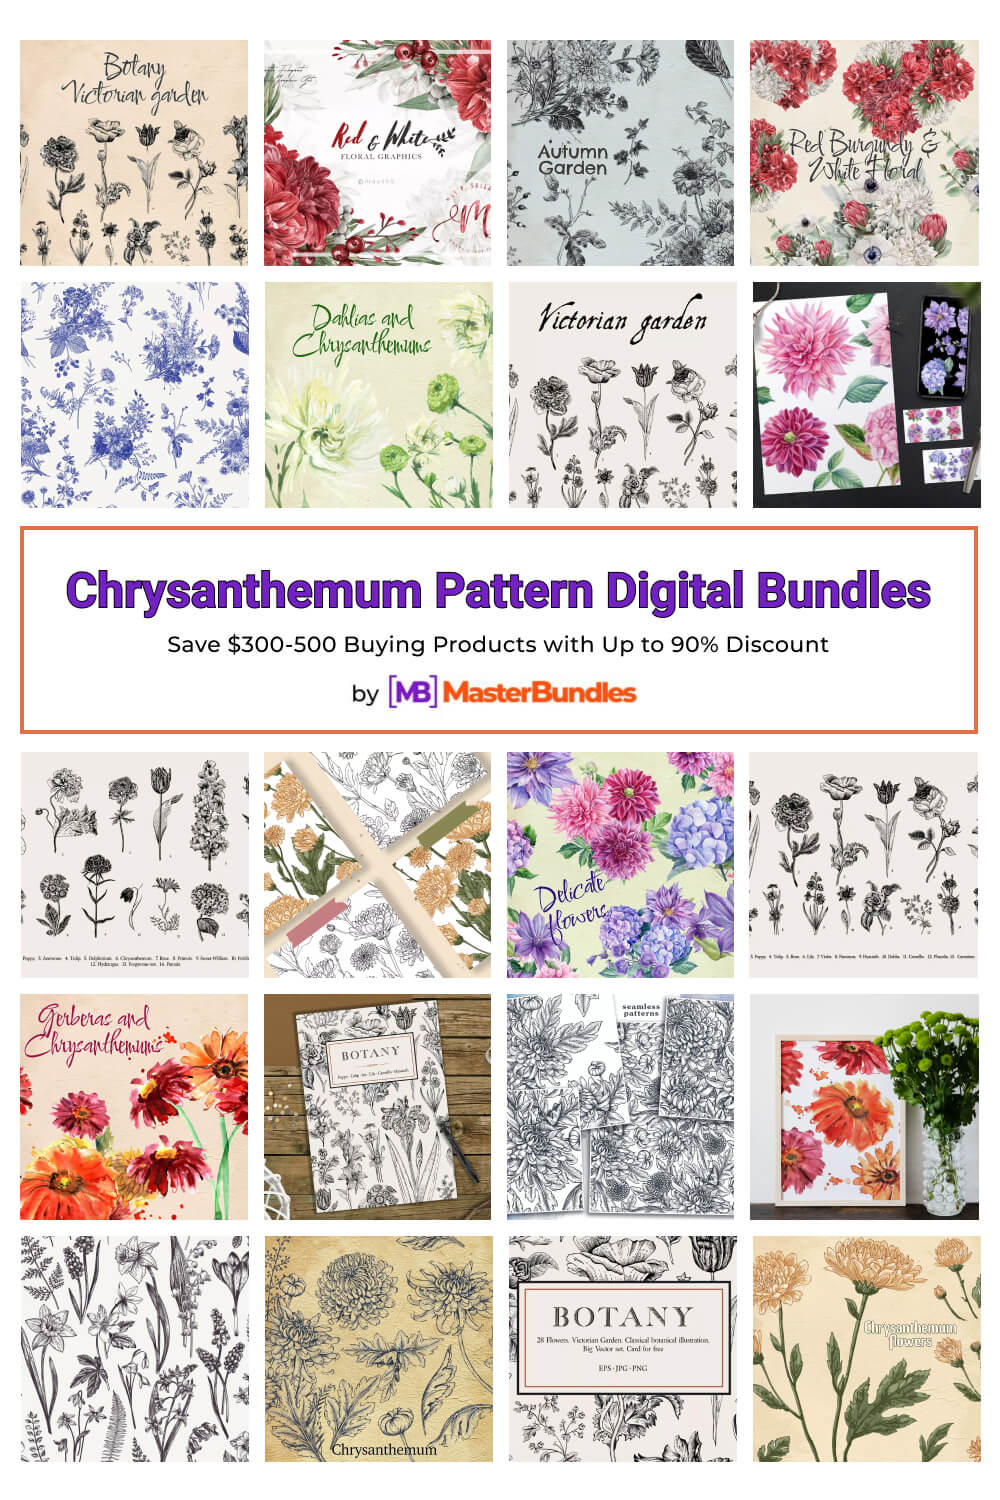 chrysanthemum pattern digital bundles pinterest image.